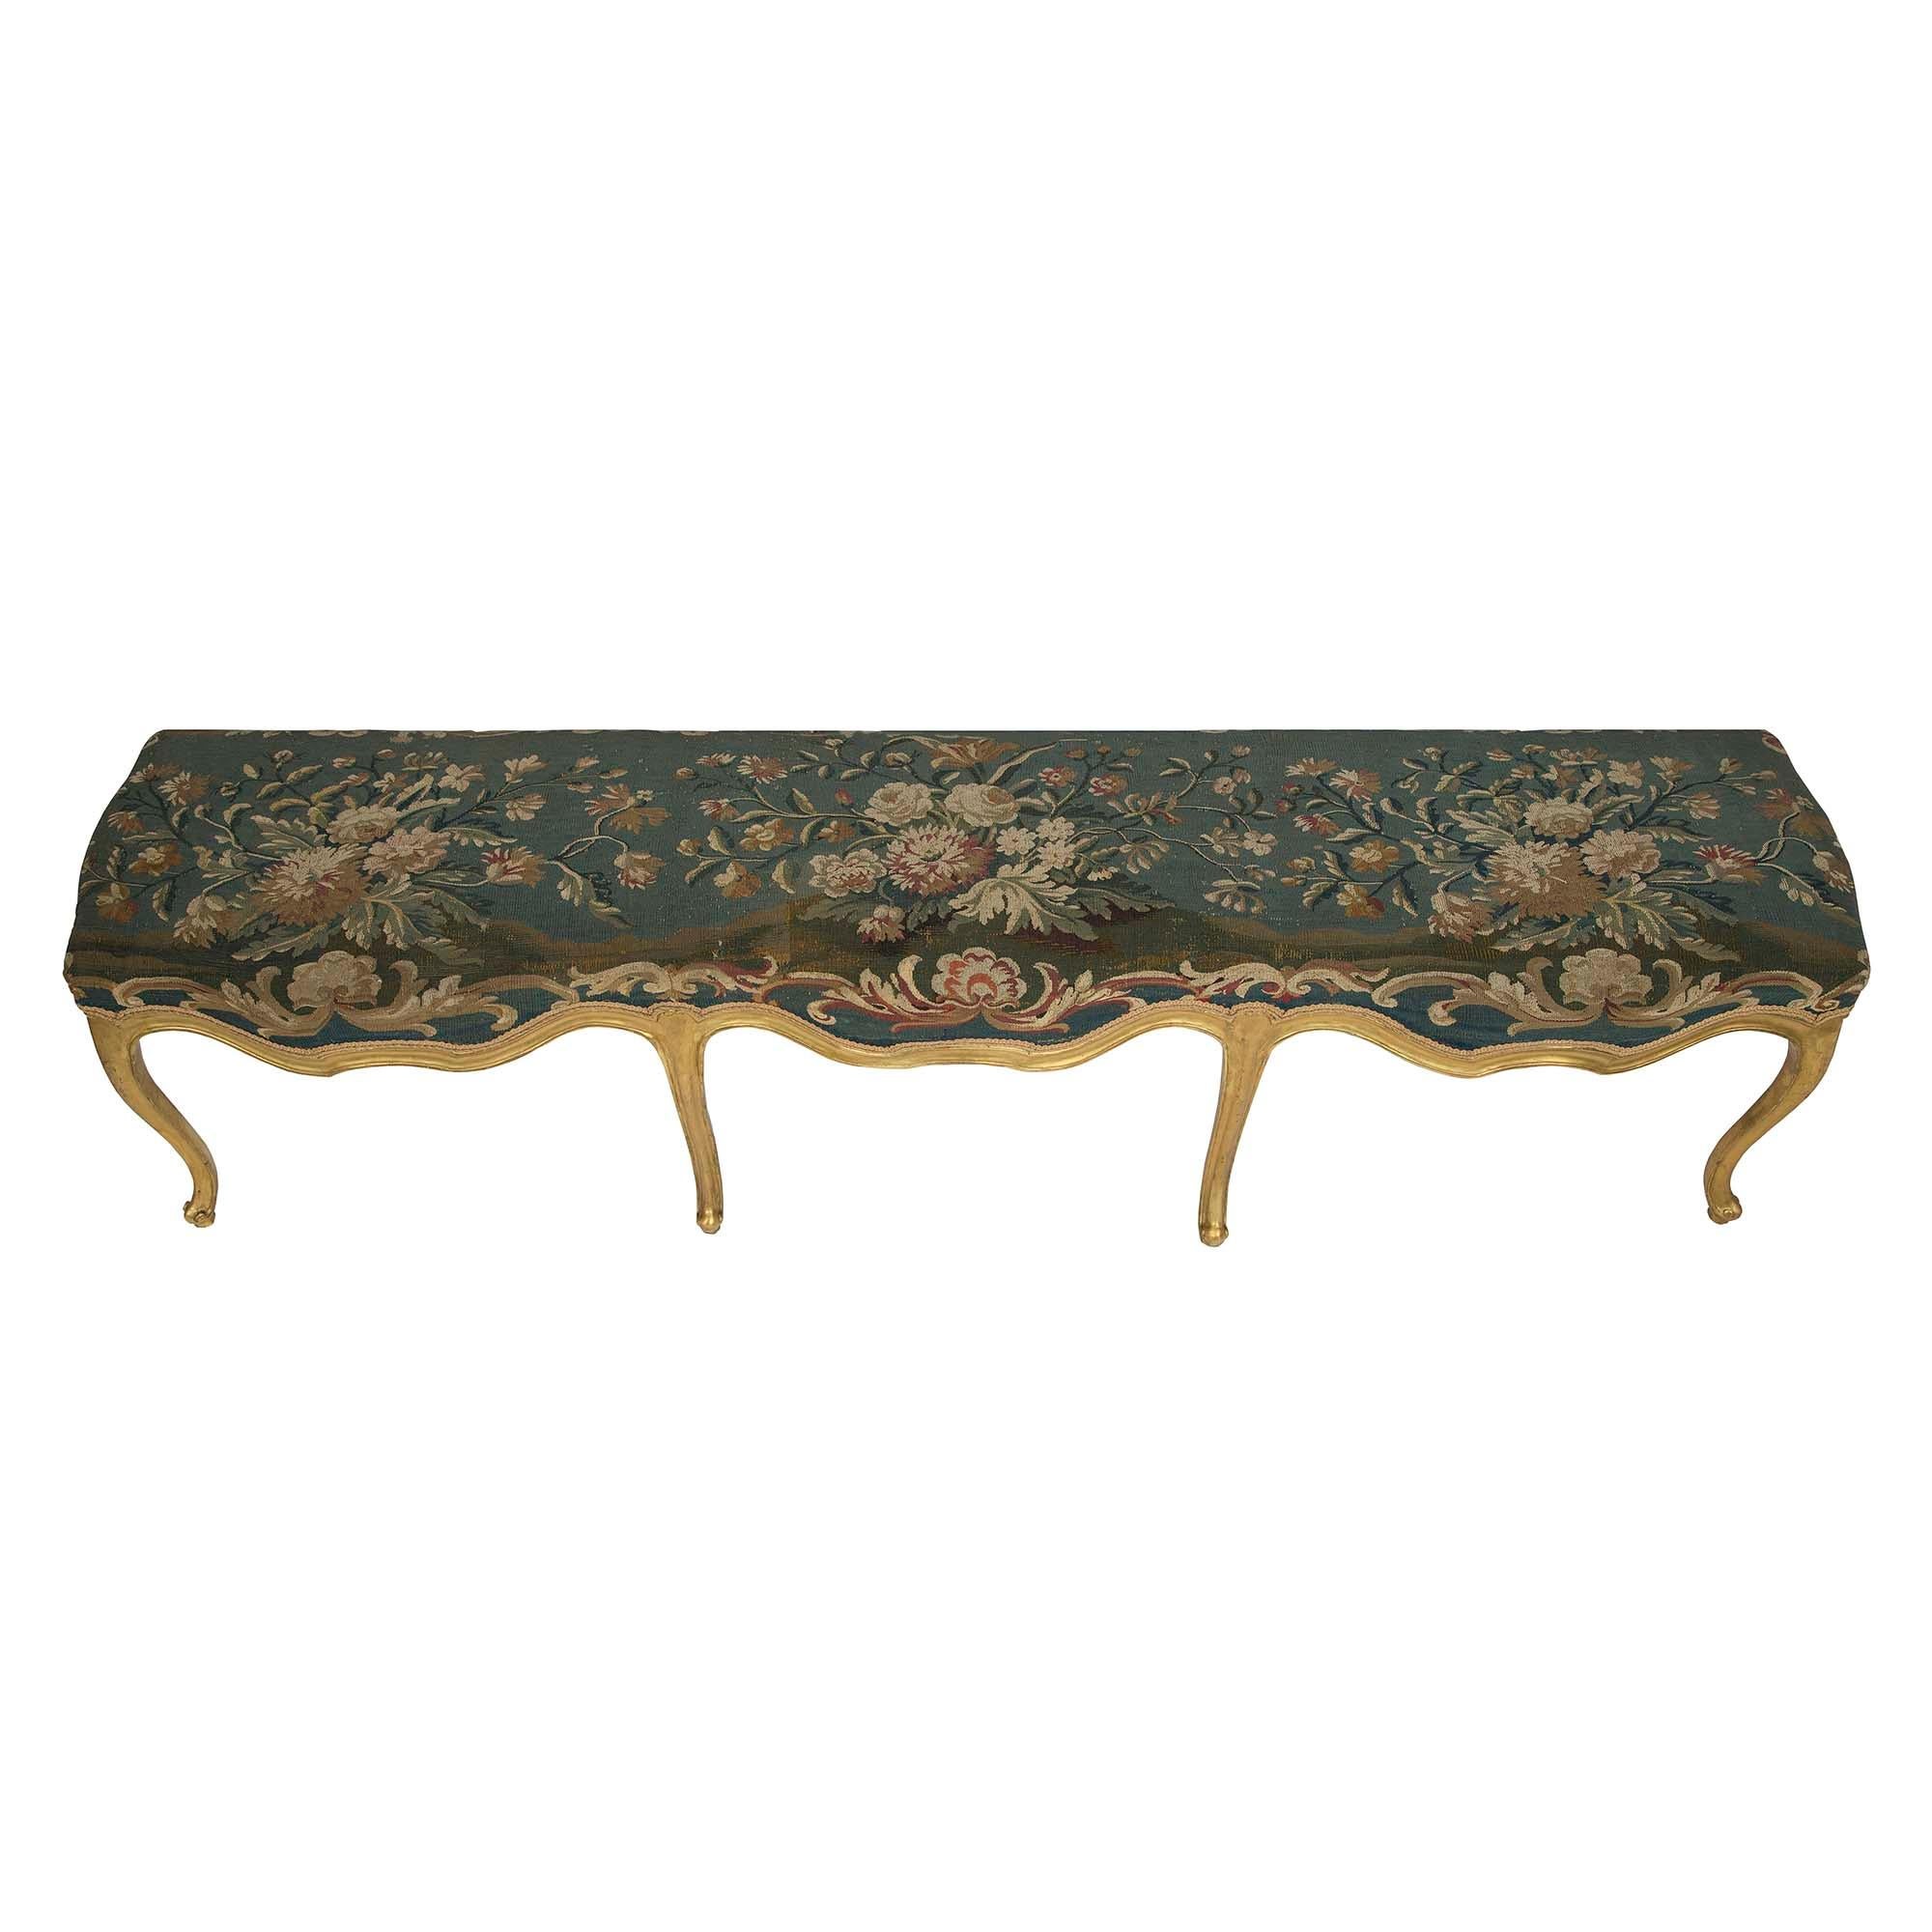 Très attrayant et inhabituellement large banc à huit pieds en bois doré et tapisserie d'Aubusson d'époque Louis XV du XVIIIe siècle. Le banc est élégamment surélevé par des pieds cabriole allongés à volutes en 